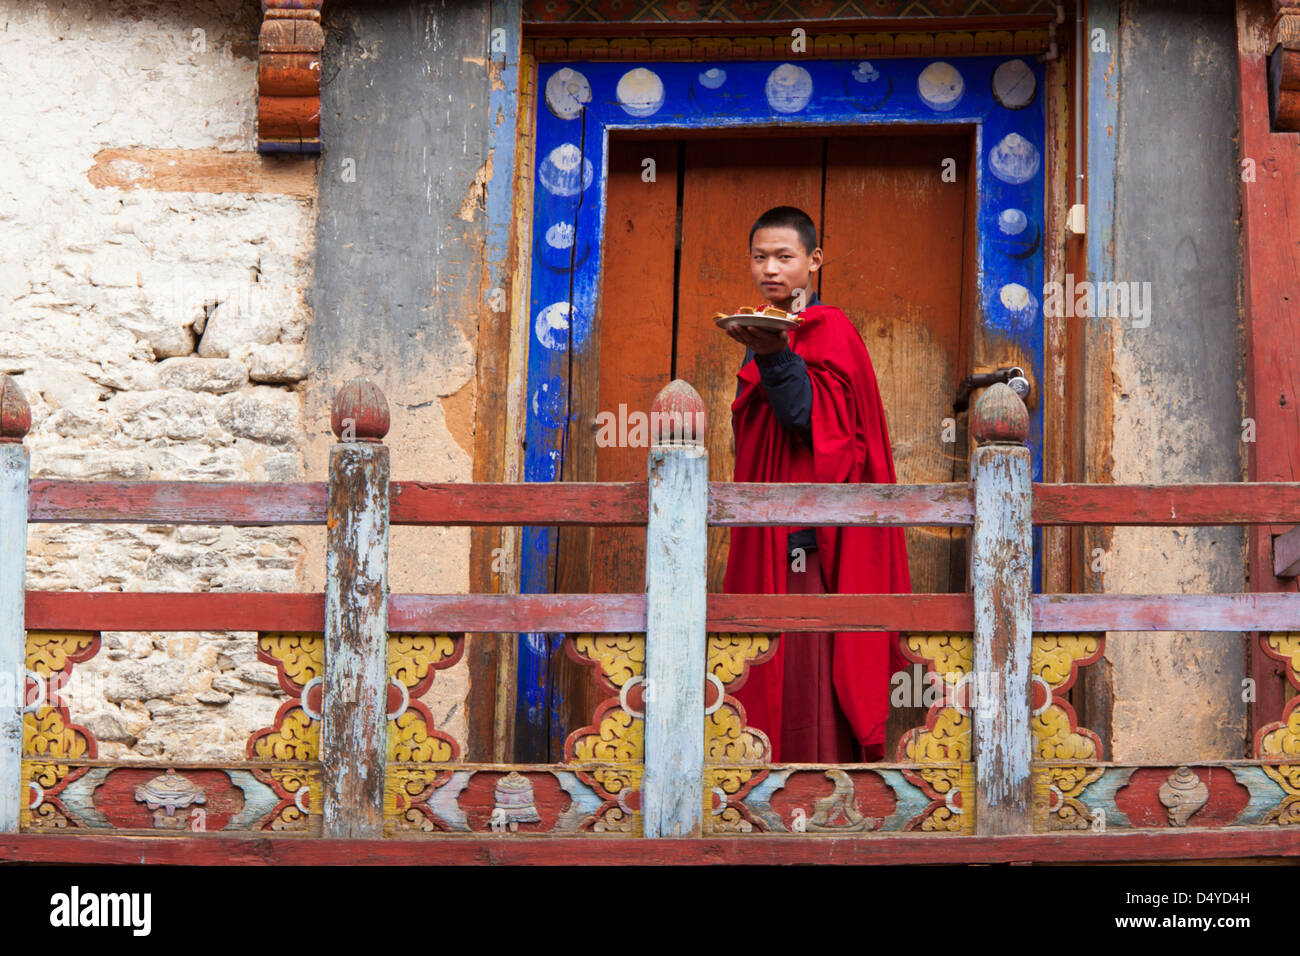 Monk, Paro Valley, Bhutan Stock Photo